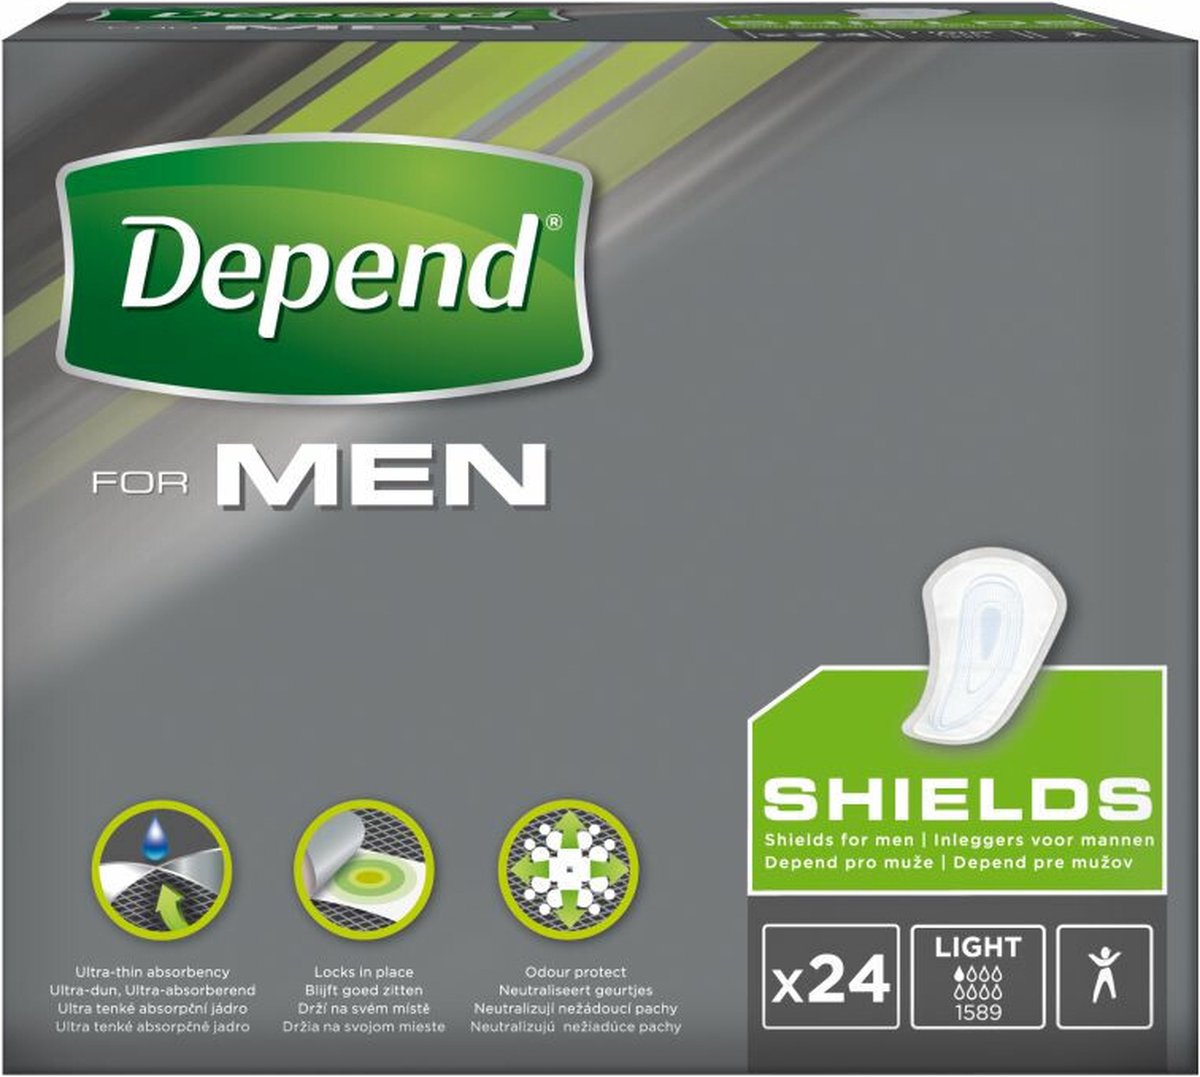 Depend verband - Incontinentie en urineverlies - Mannen - Shields - 24 stuks - Depend